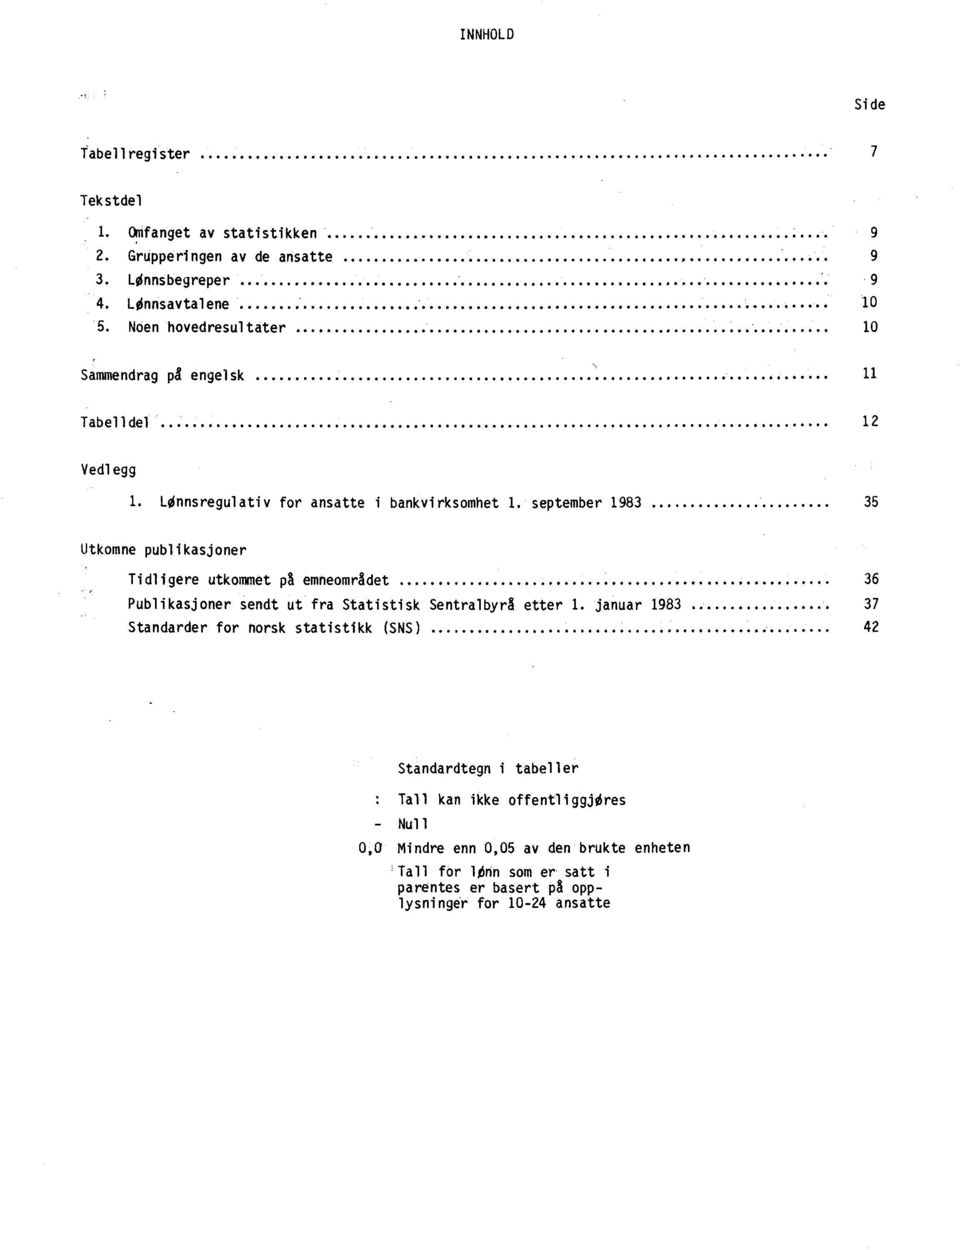 september 1983 35 Utkomne publikasjoner Tidligere utkommet på emneområdet 36 Publikasjoner sendt ut fra Statistisk Sentralbyrå etter 1.